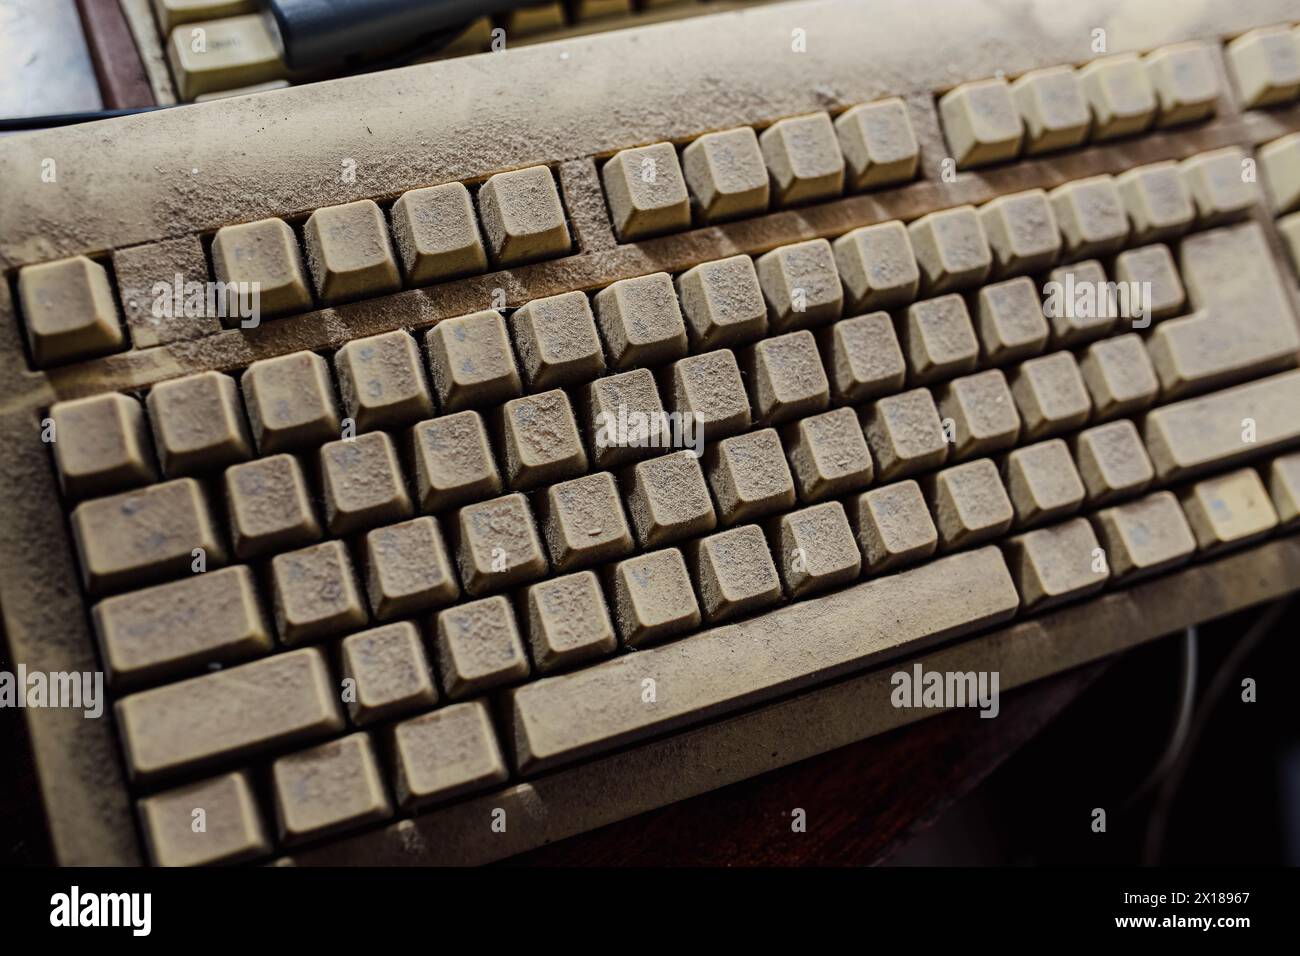 Alte alte mechanische Computertastatur in Staub, Computertastatur aus den 1980er Jahren Stockfoto